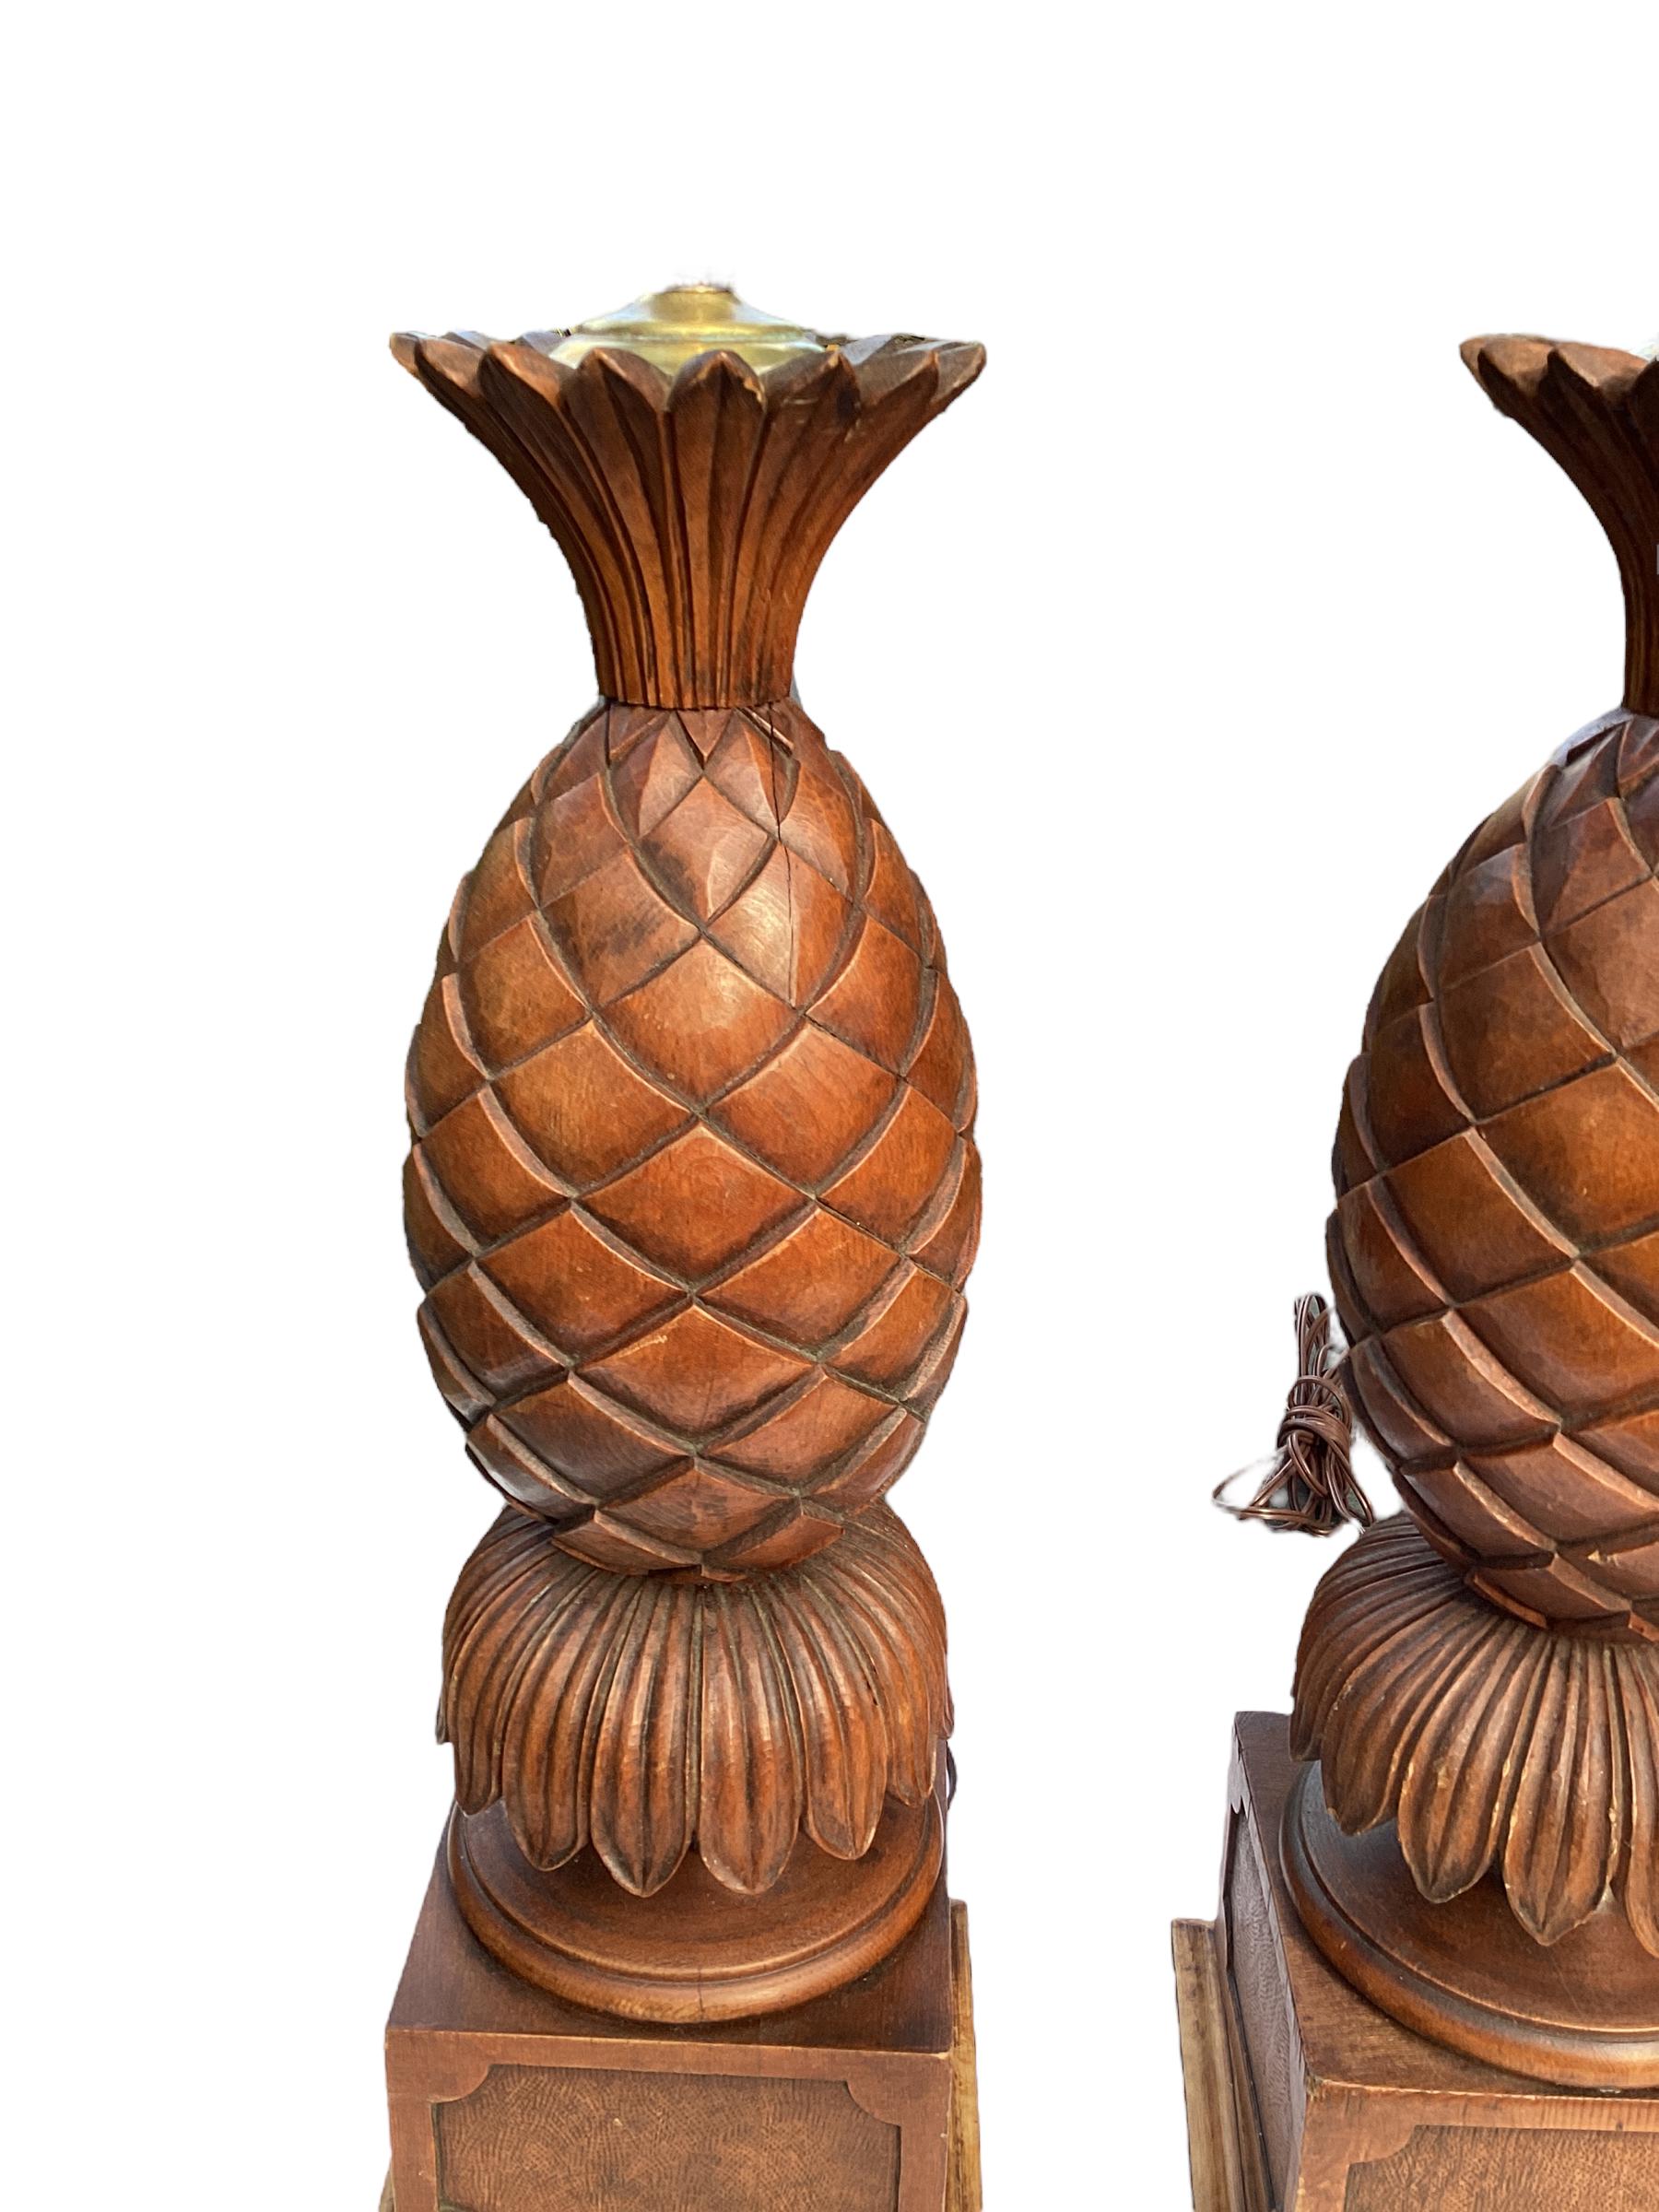 Paire de lampes ananas en bois fruitier sculpté. Sculptée à la main avec de fins détails. Les lampes reposent sur un socle carré. Câblé et en bon état de fonctionnement.